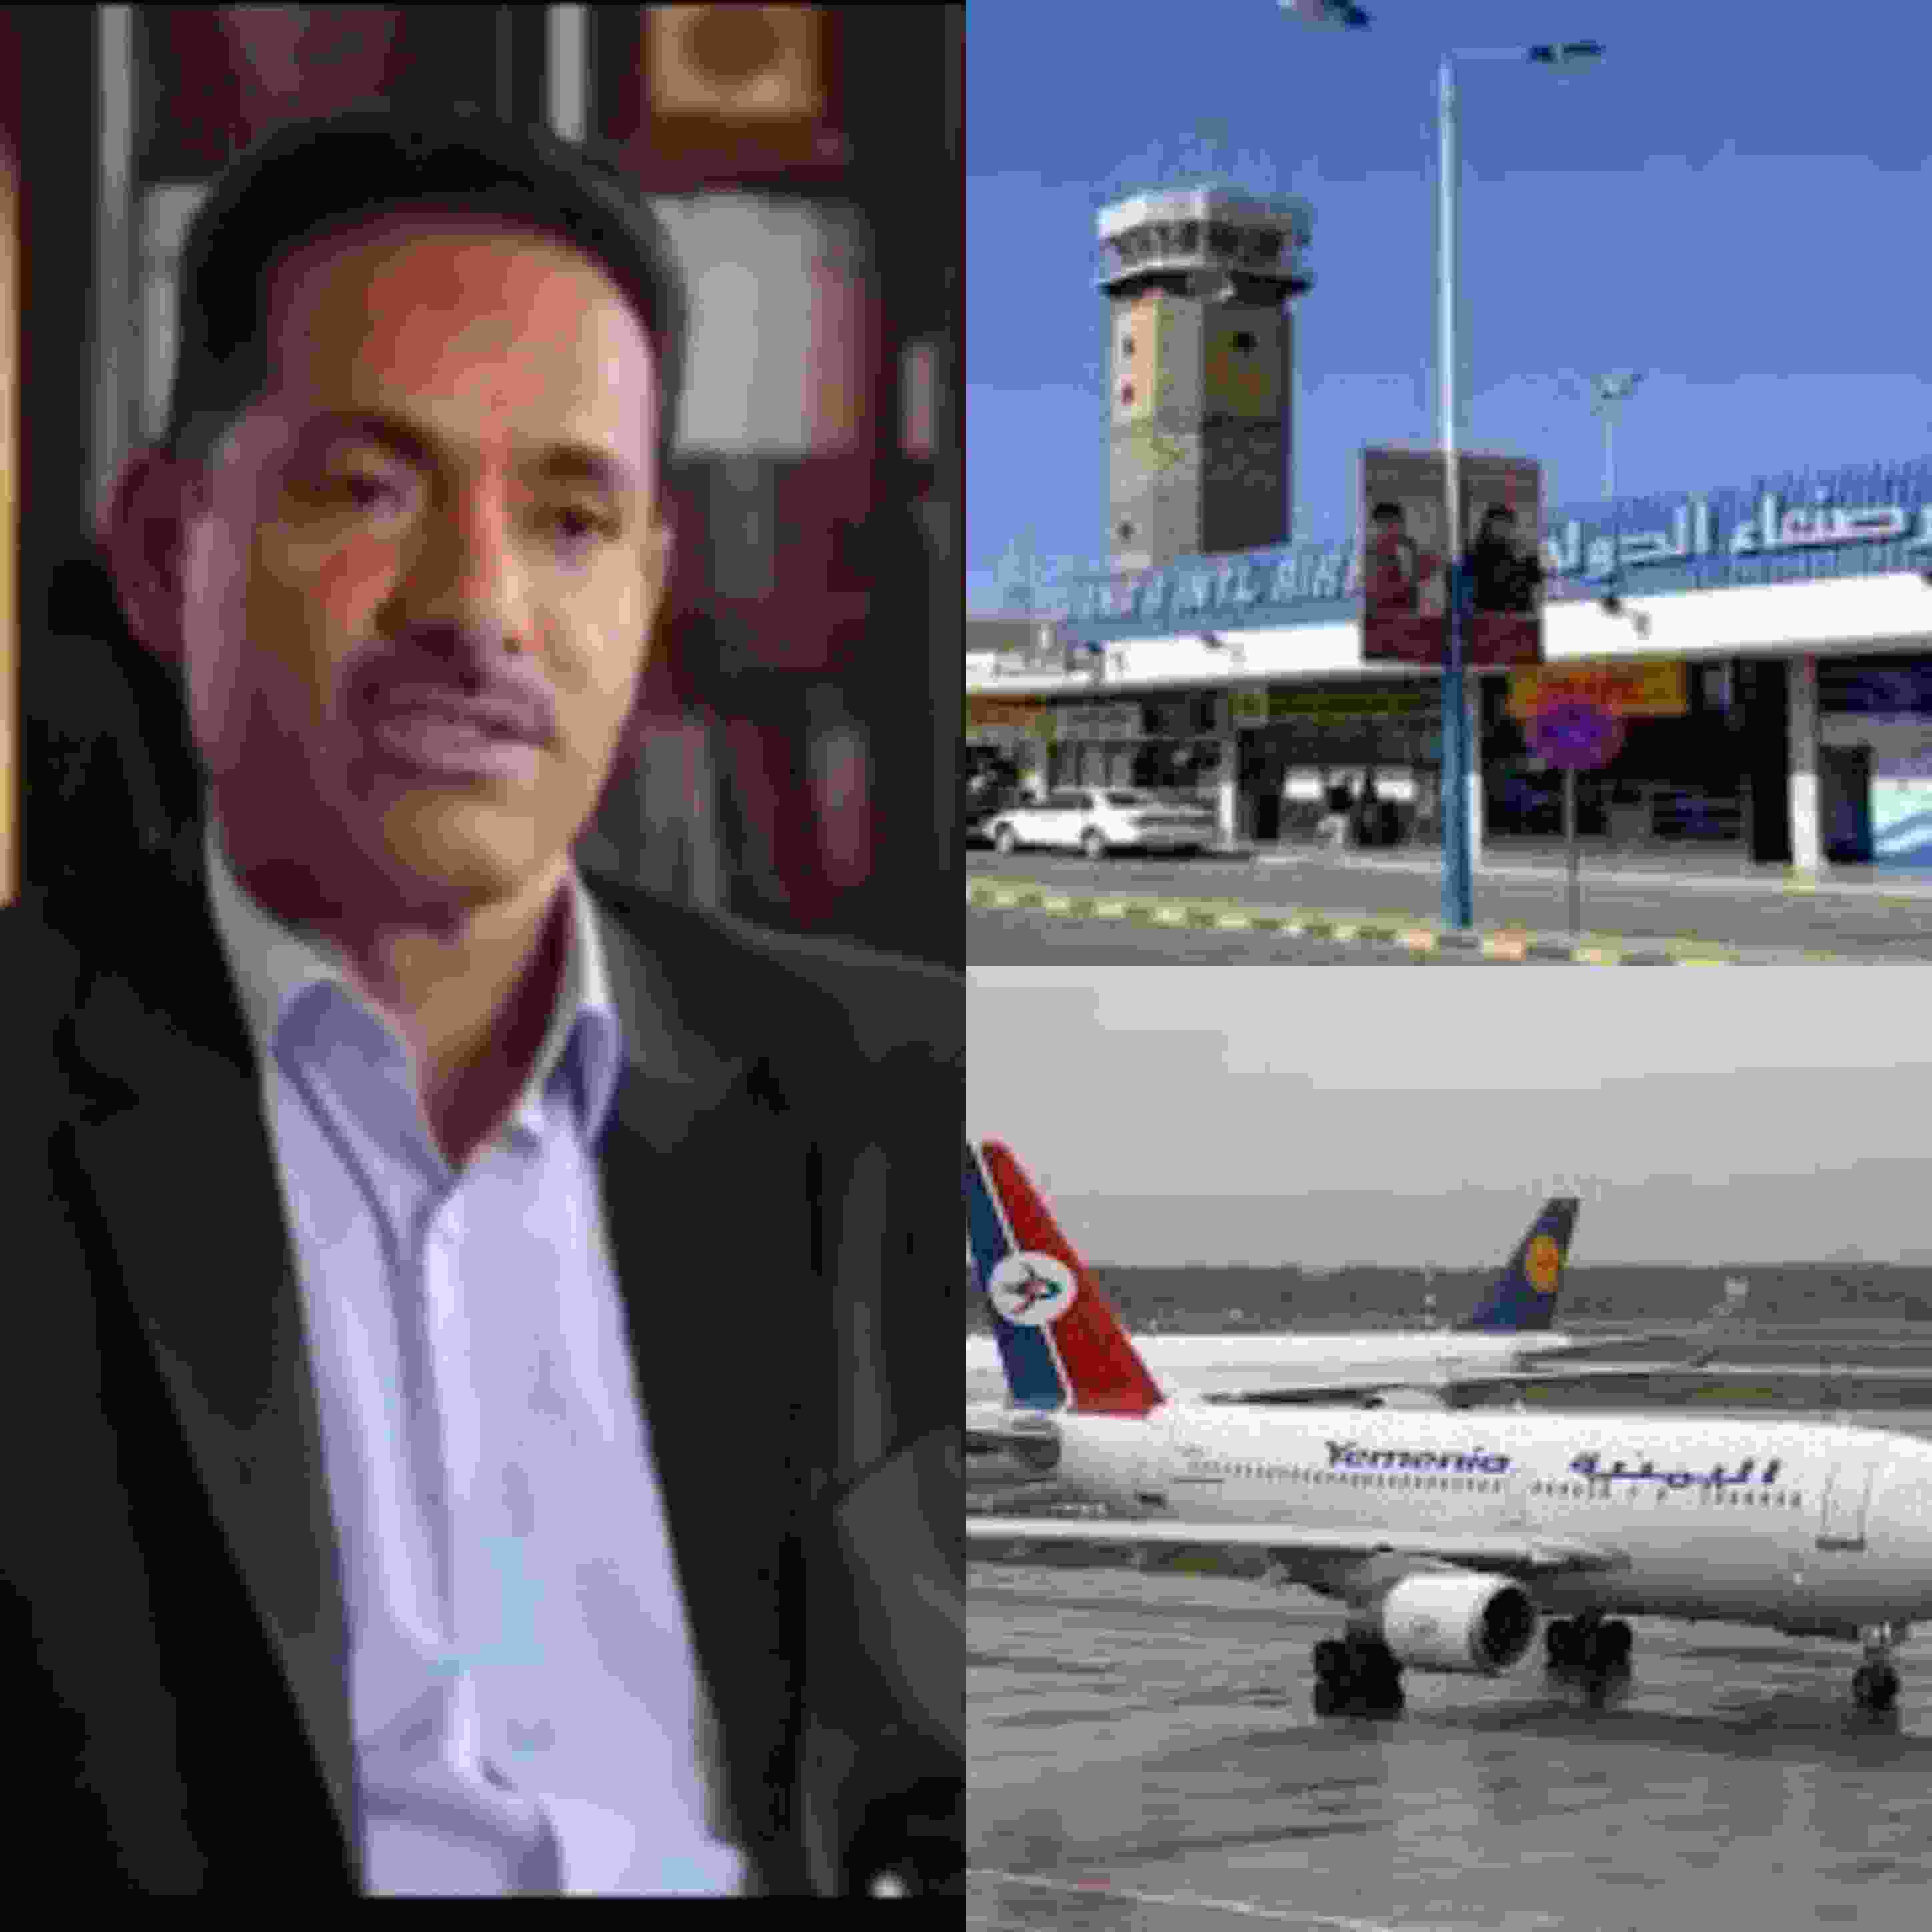 مدير مطار صنعاء الدولي يكشف أسباب رفع الحظر عن المطار ويعلن عن موعد الفتح وإستئناف الرحلات الجوية